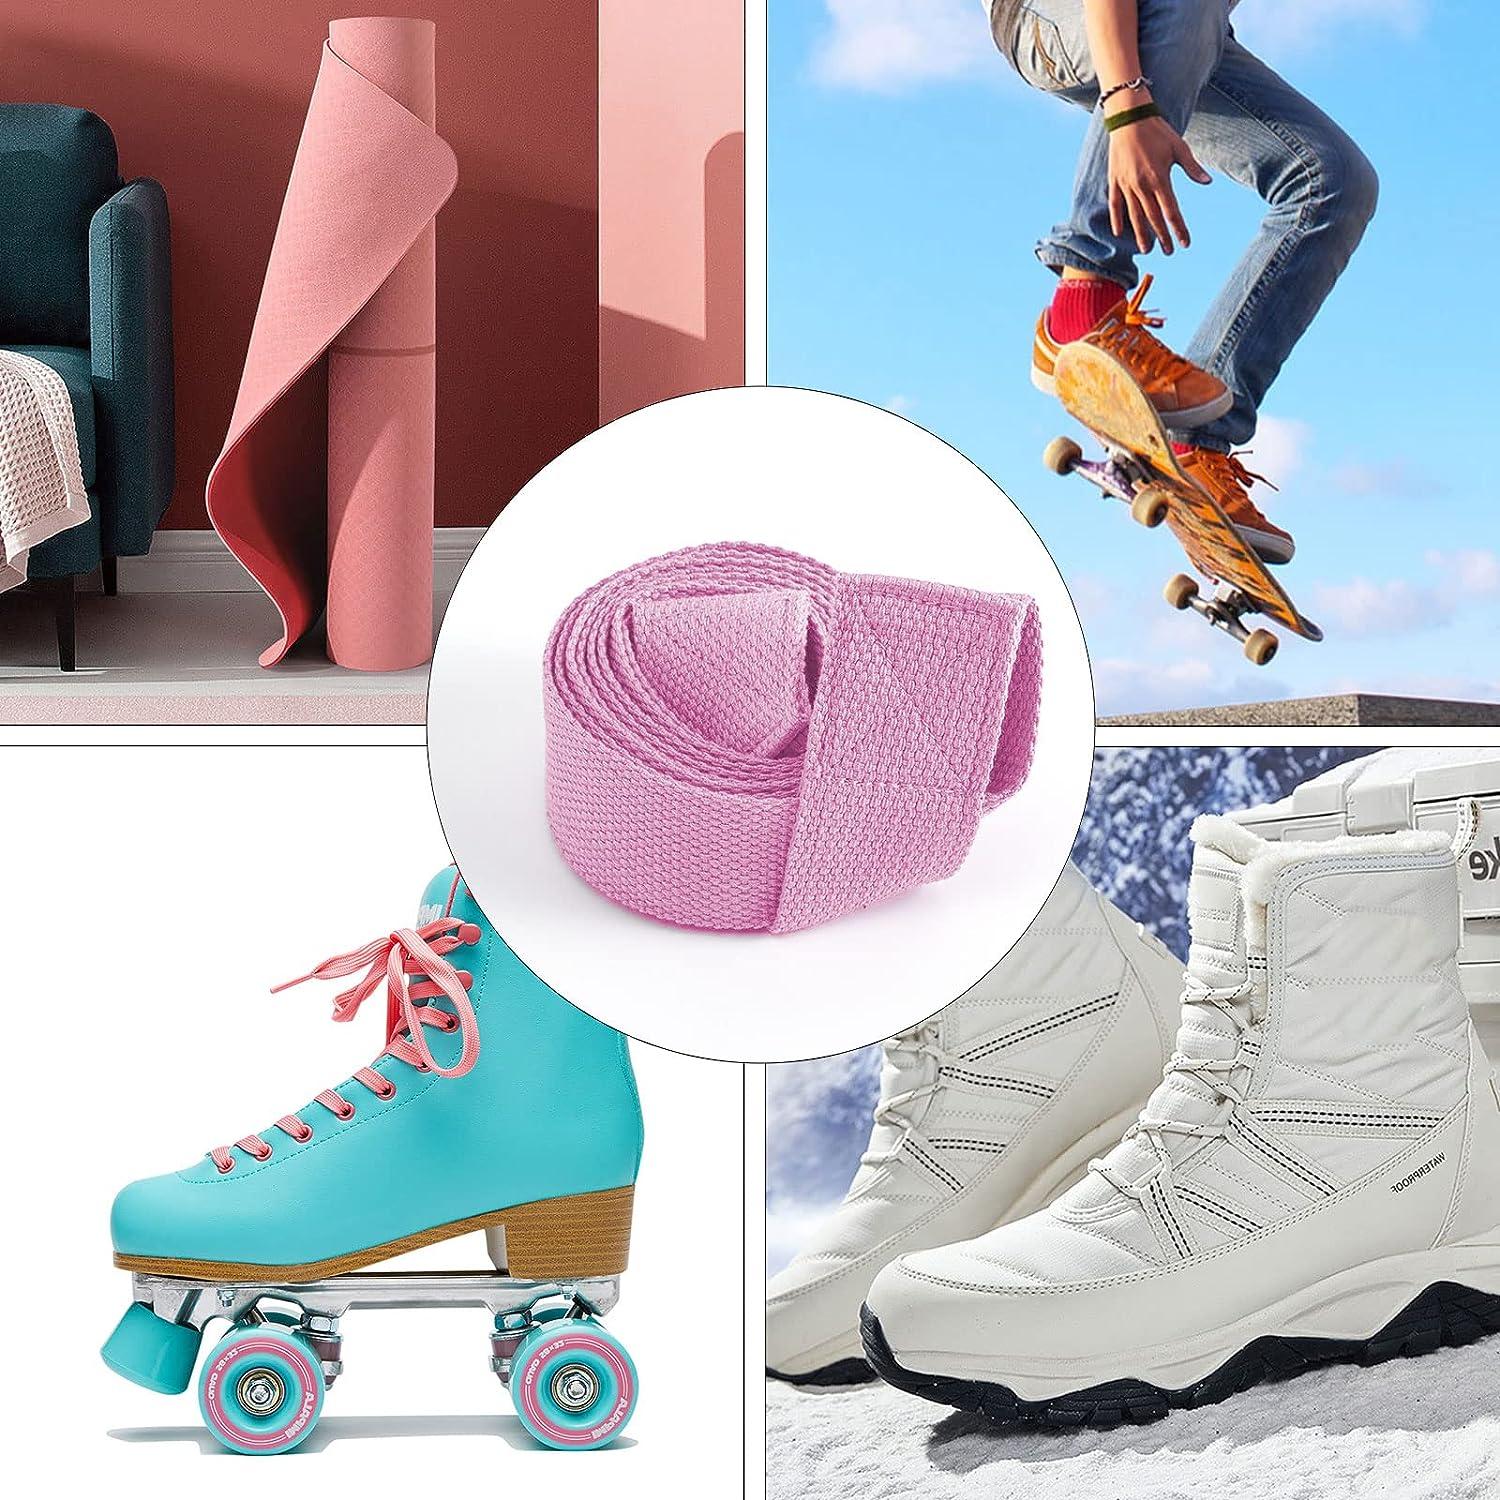 Yoga Mat Carrier Strap, Adjustable Roller Skate Ski Boots Carrier Strap for  Yoga Mat, Skiing, Snowboarding